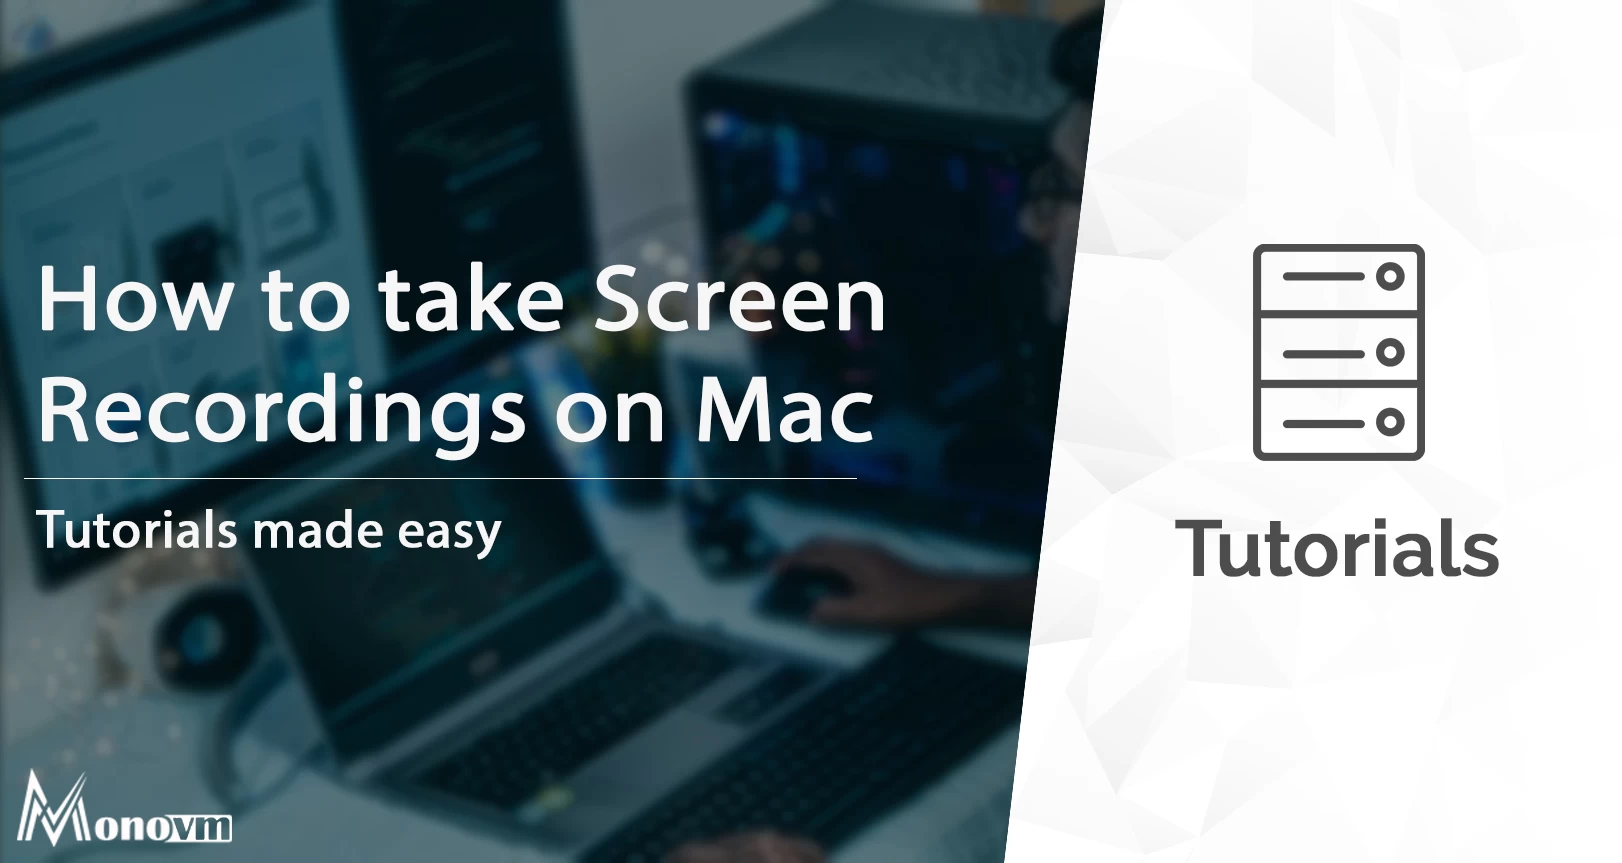 Taking Screen Recordings on Mac